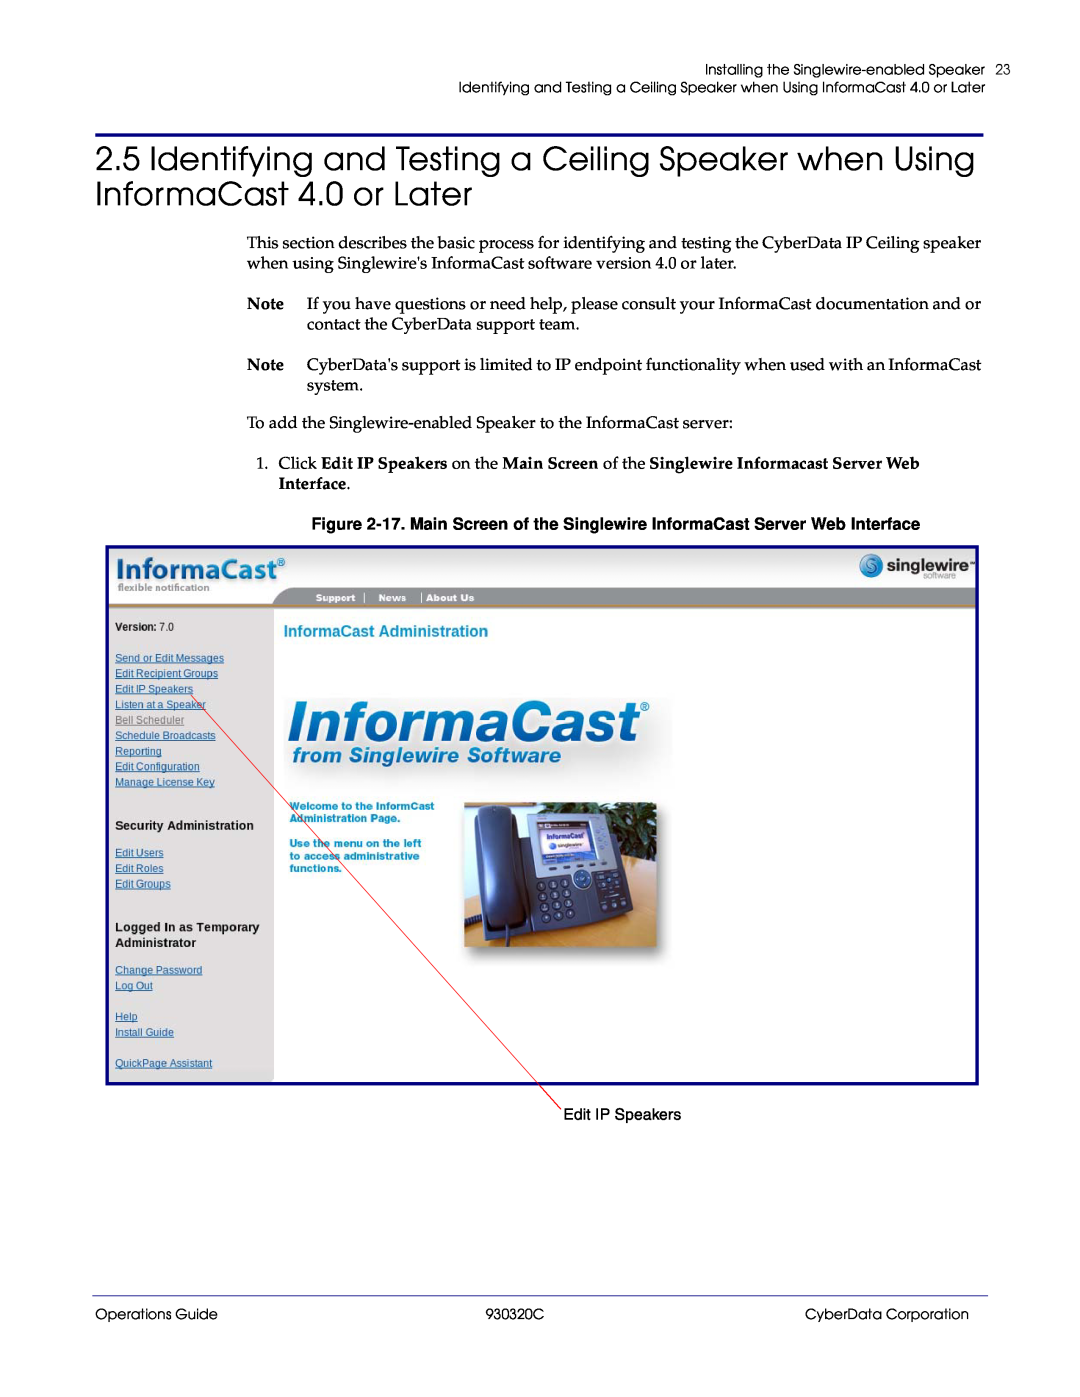 CyberData 11103 manual Edit IP Speakers, Installing the Singlewire-enabledSpeaker, Operations Guide, 930320C 